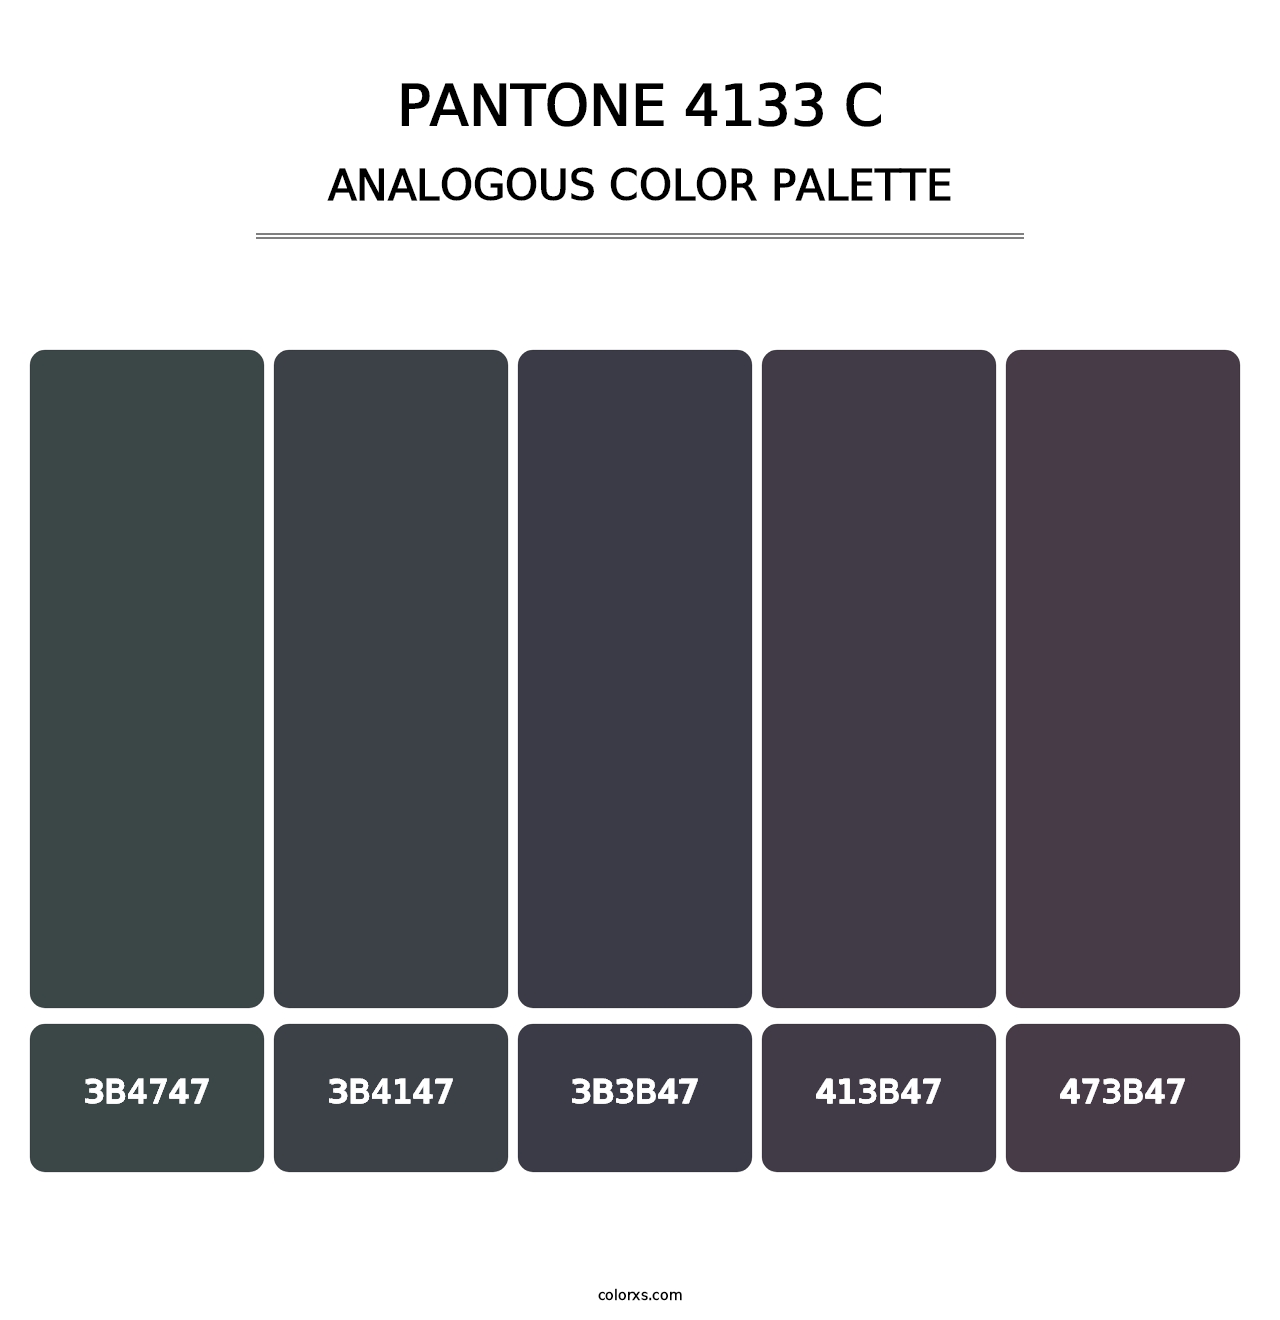 PANTONE 4133 C - Analogous Color Palette